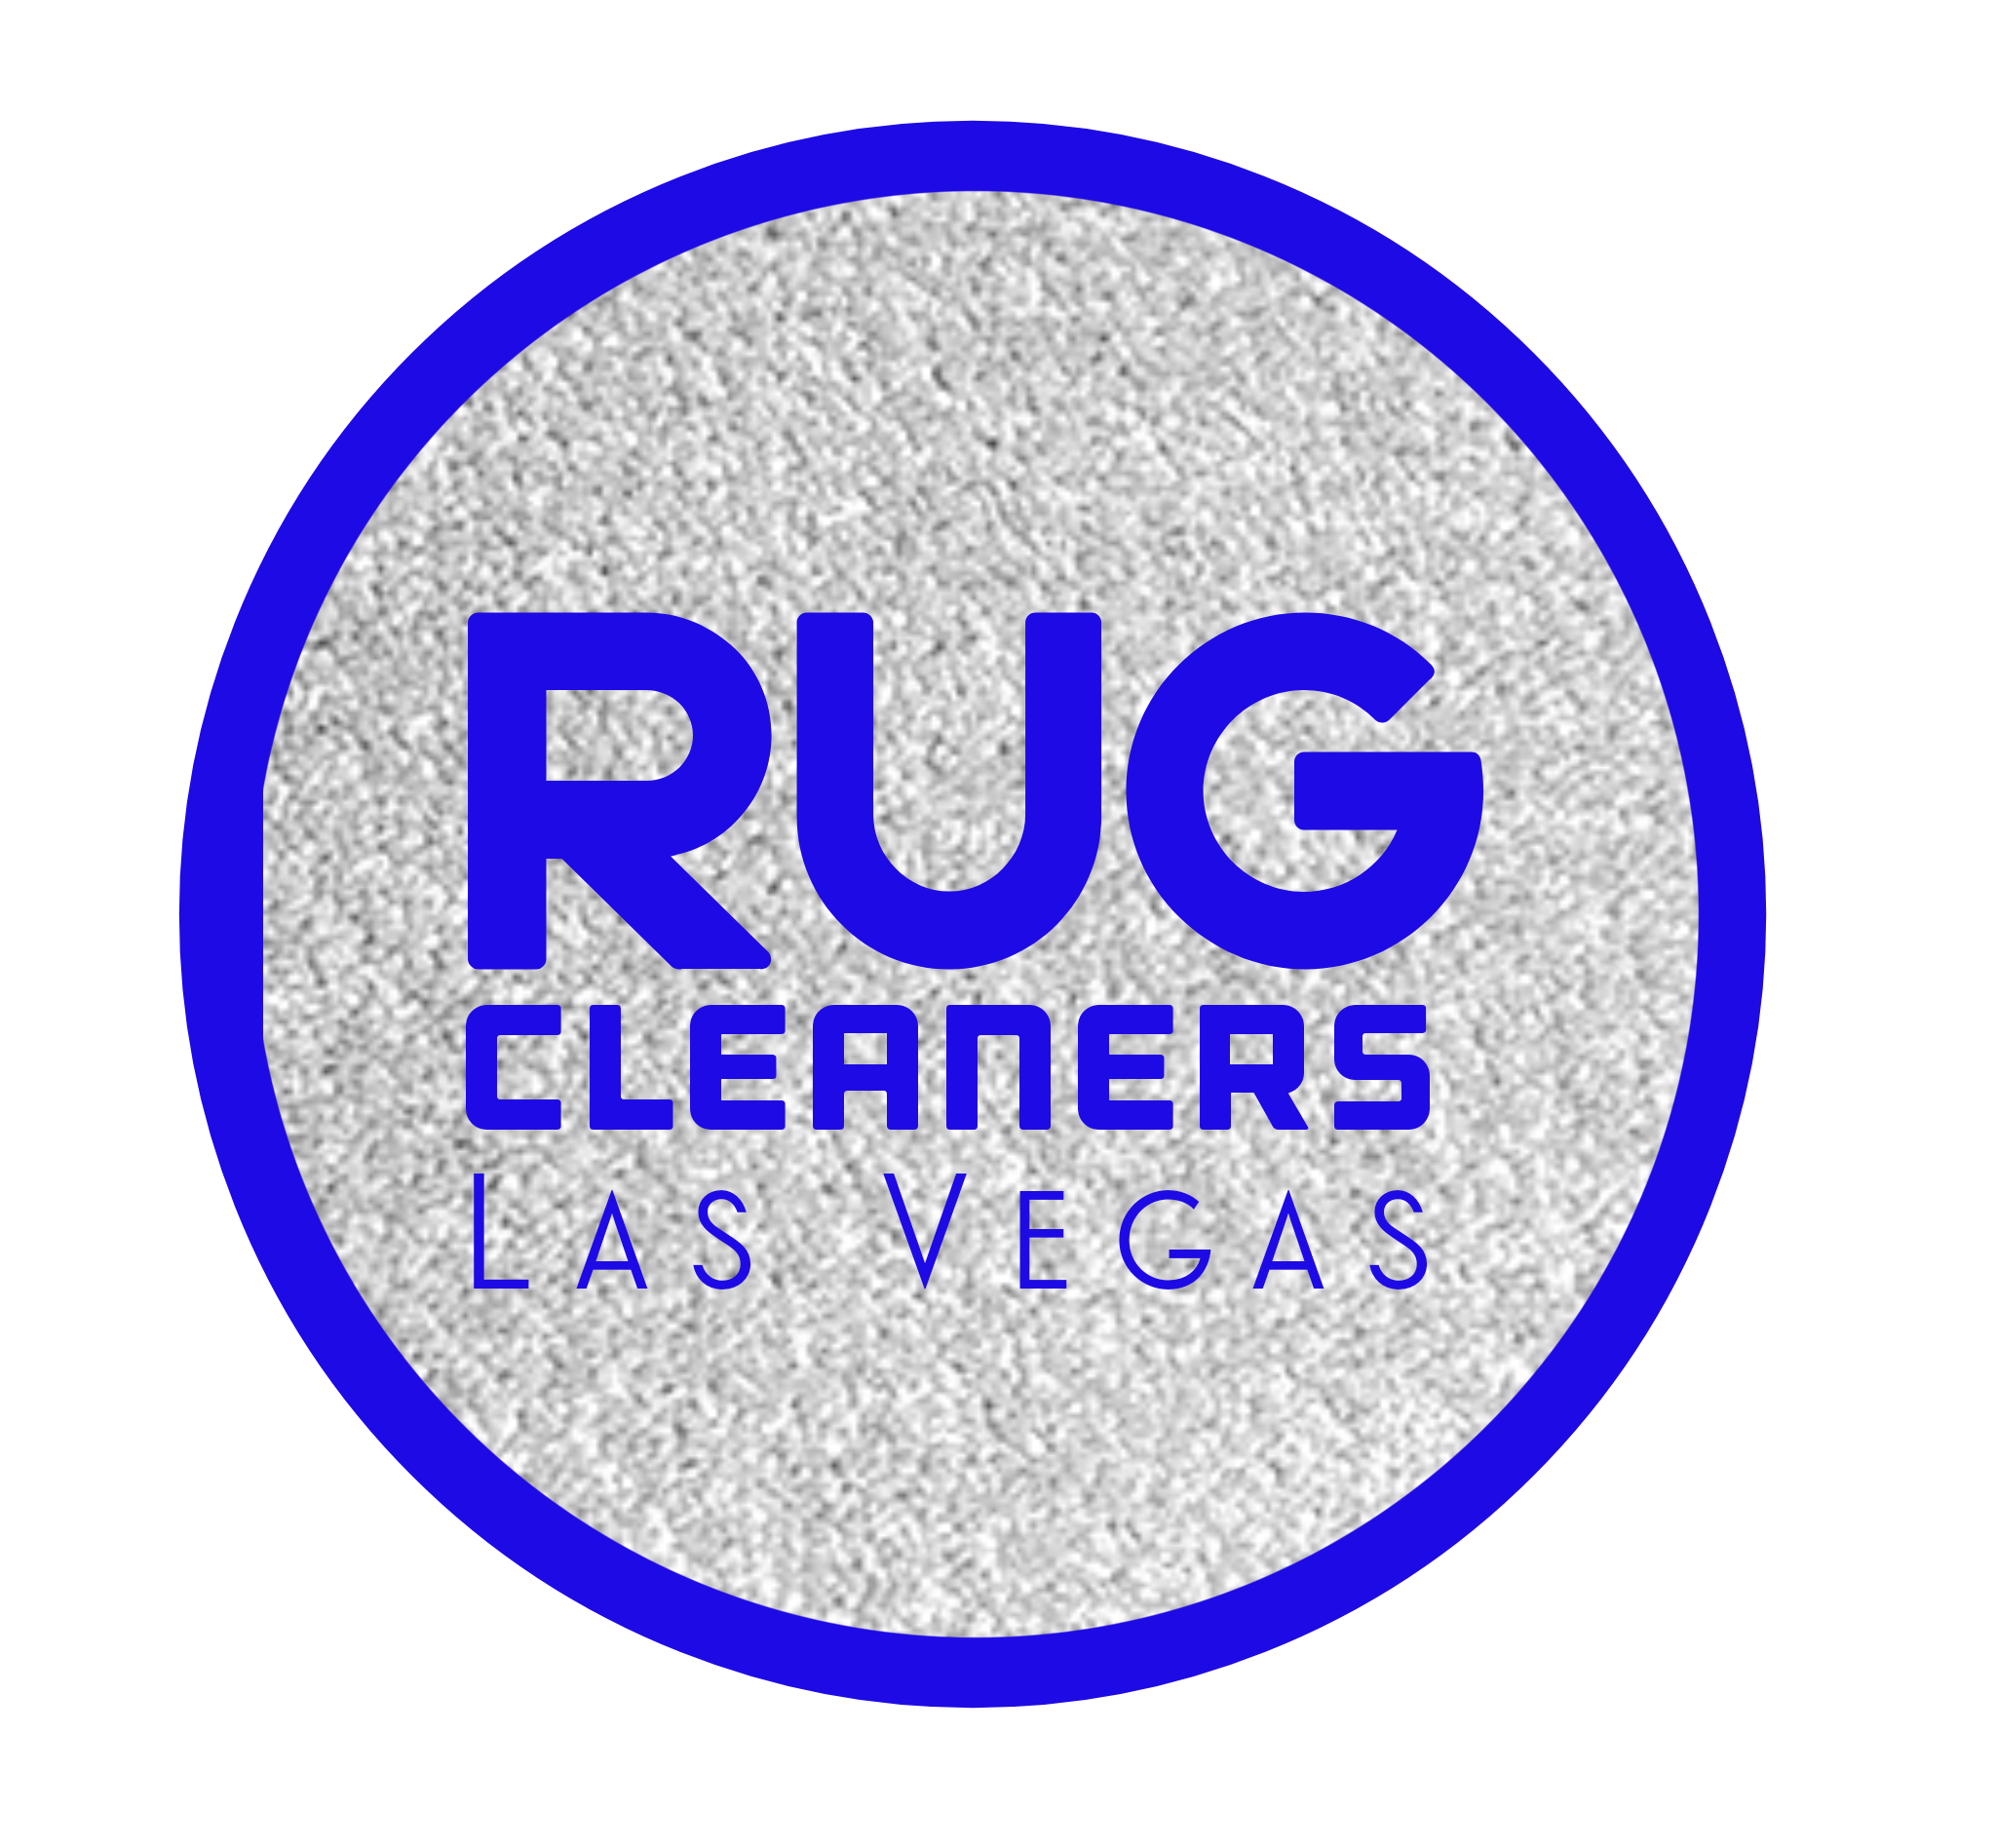 Carpet Cleaning Las Vegas  Las Vegas Carpet Cleaning